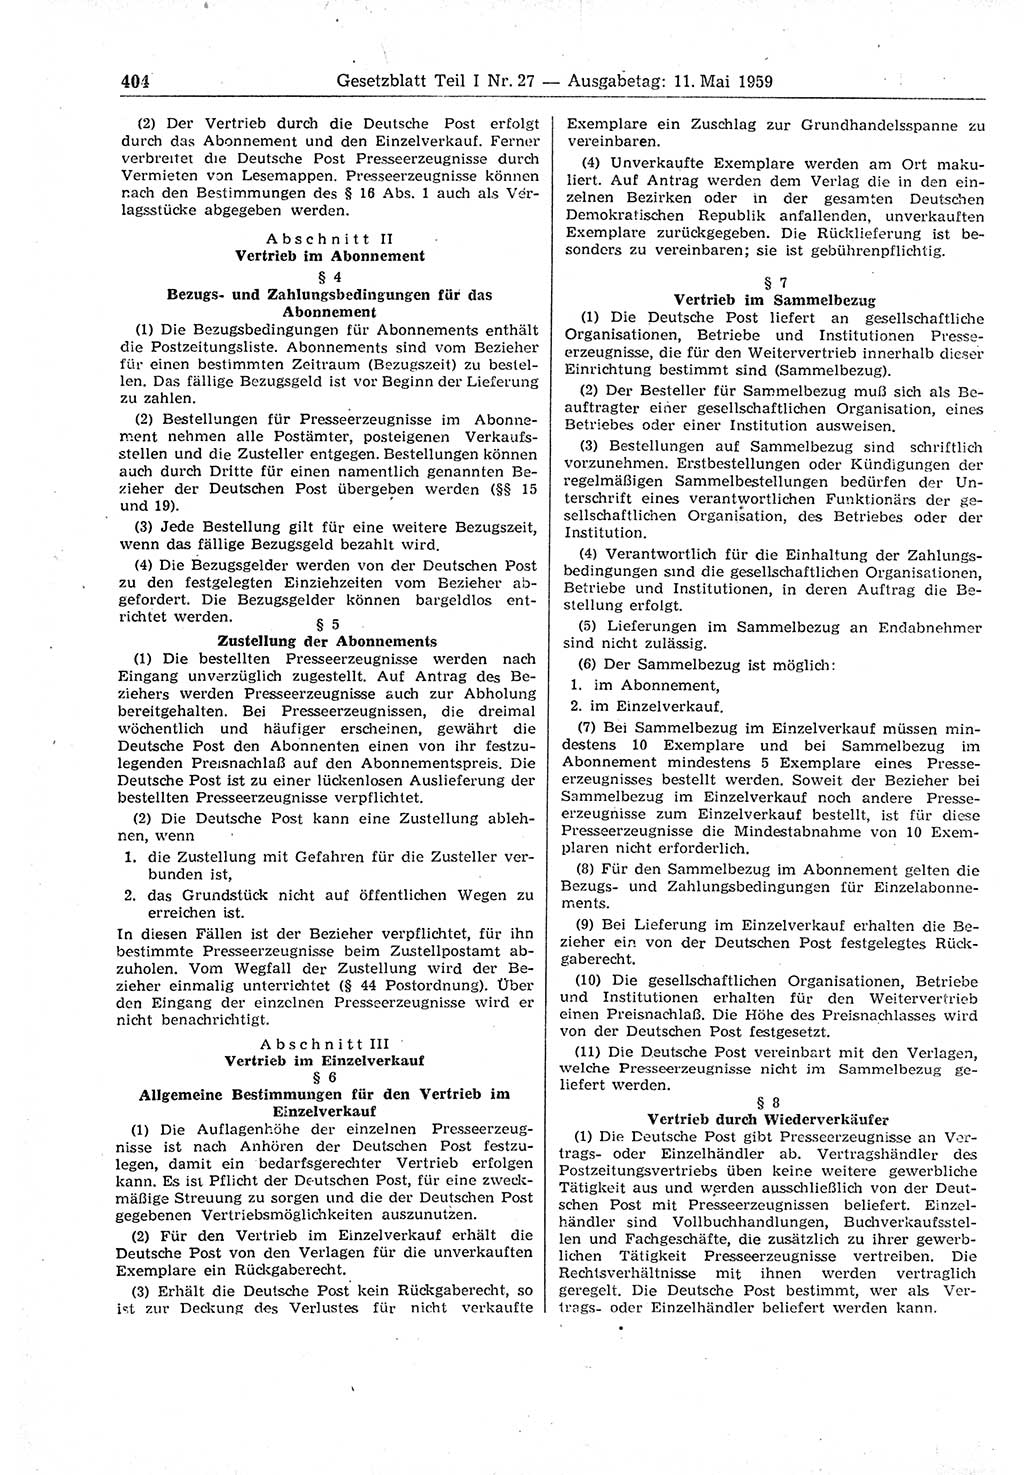 Gesetzblatt (GBl.) der Deutschen Demokratischen Republik (DDR) Teil Ⅰ 1959, Seite 404 (GBl. DDR Ⅰ 1959, S. 404)